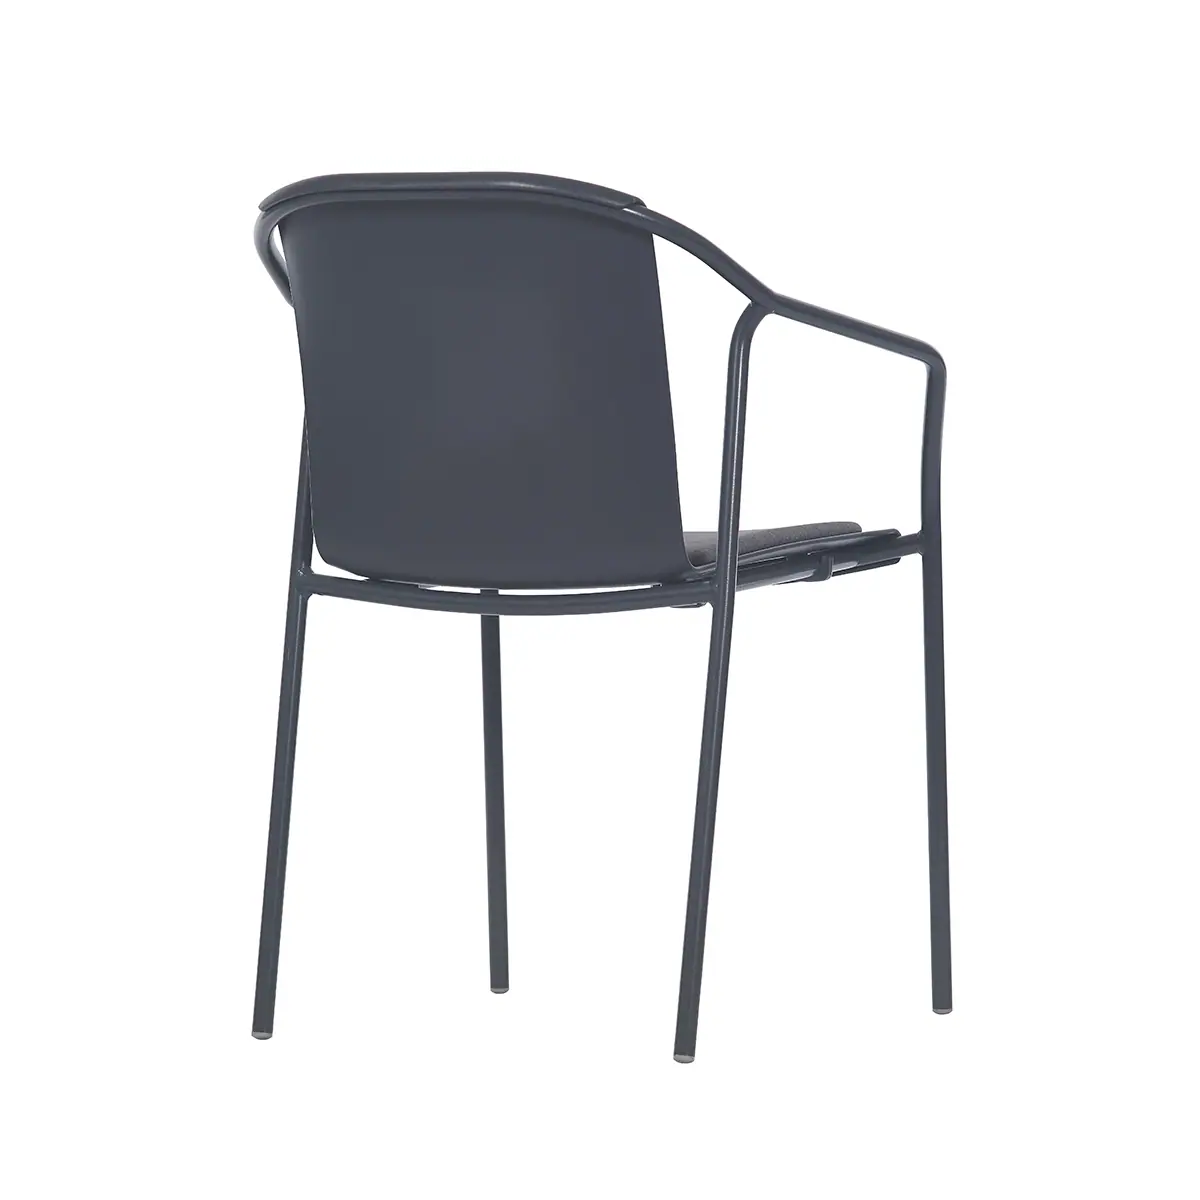 81520-81512-rod-pad-chair